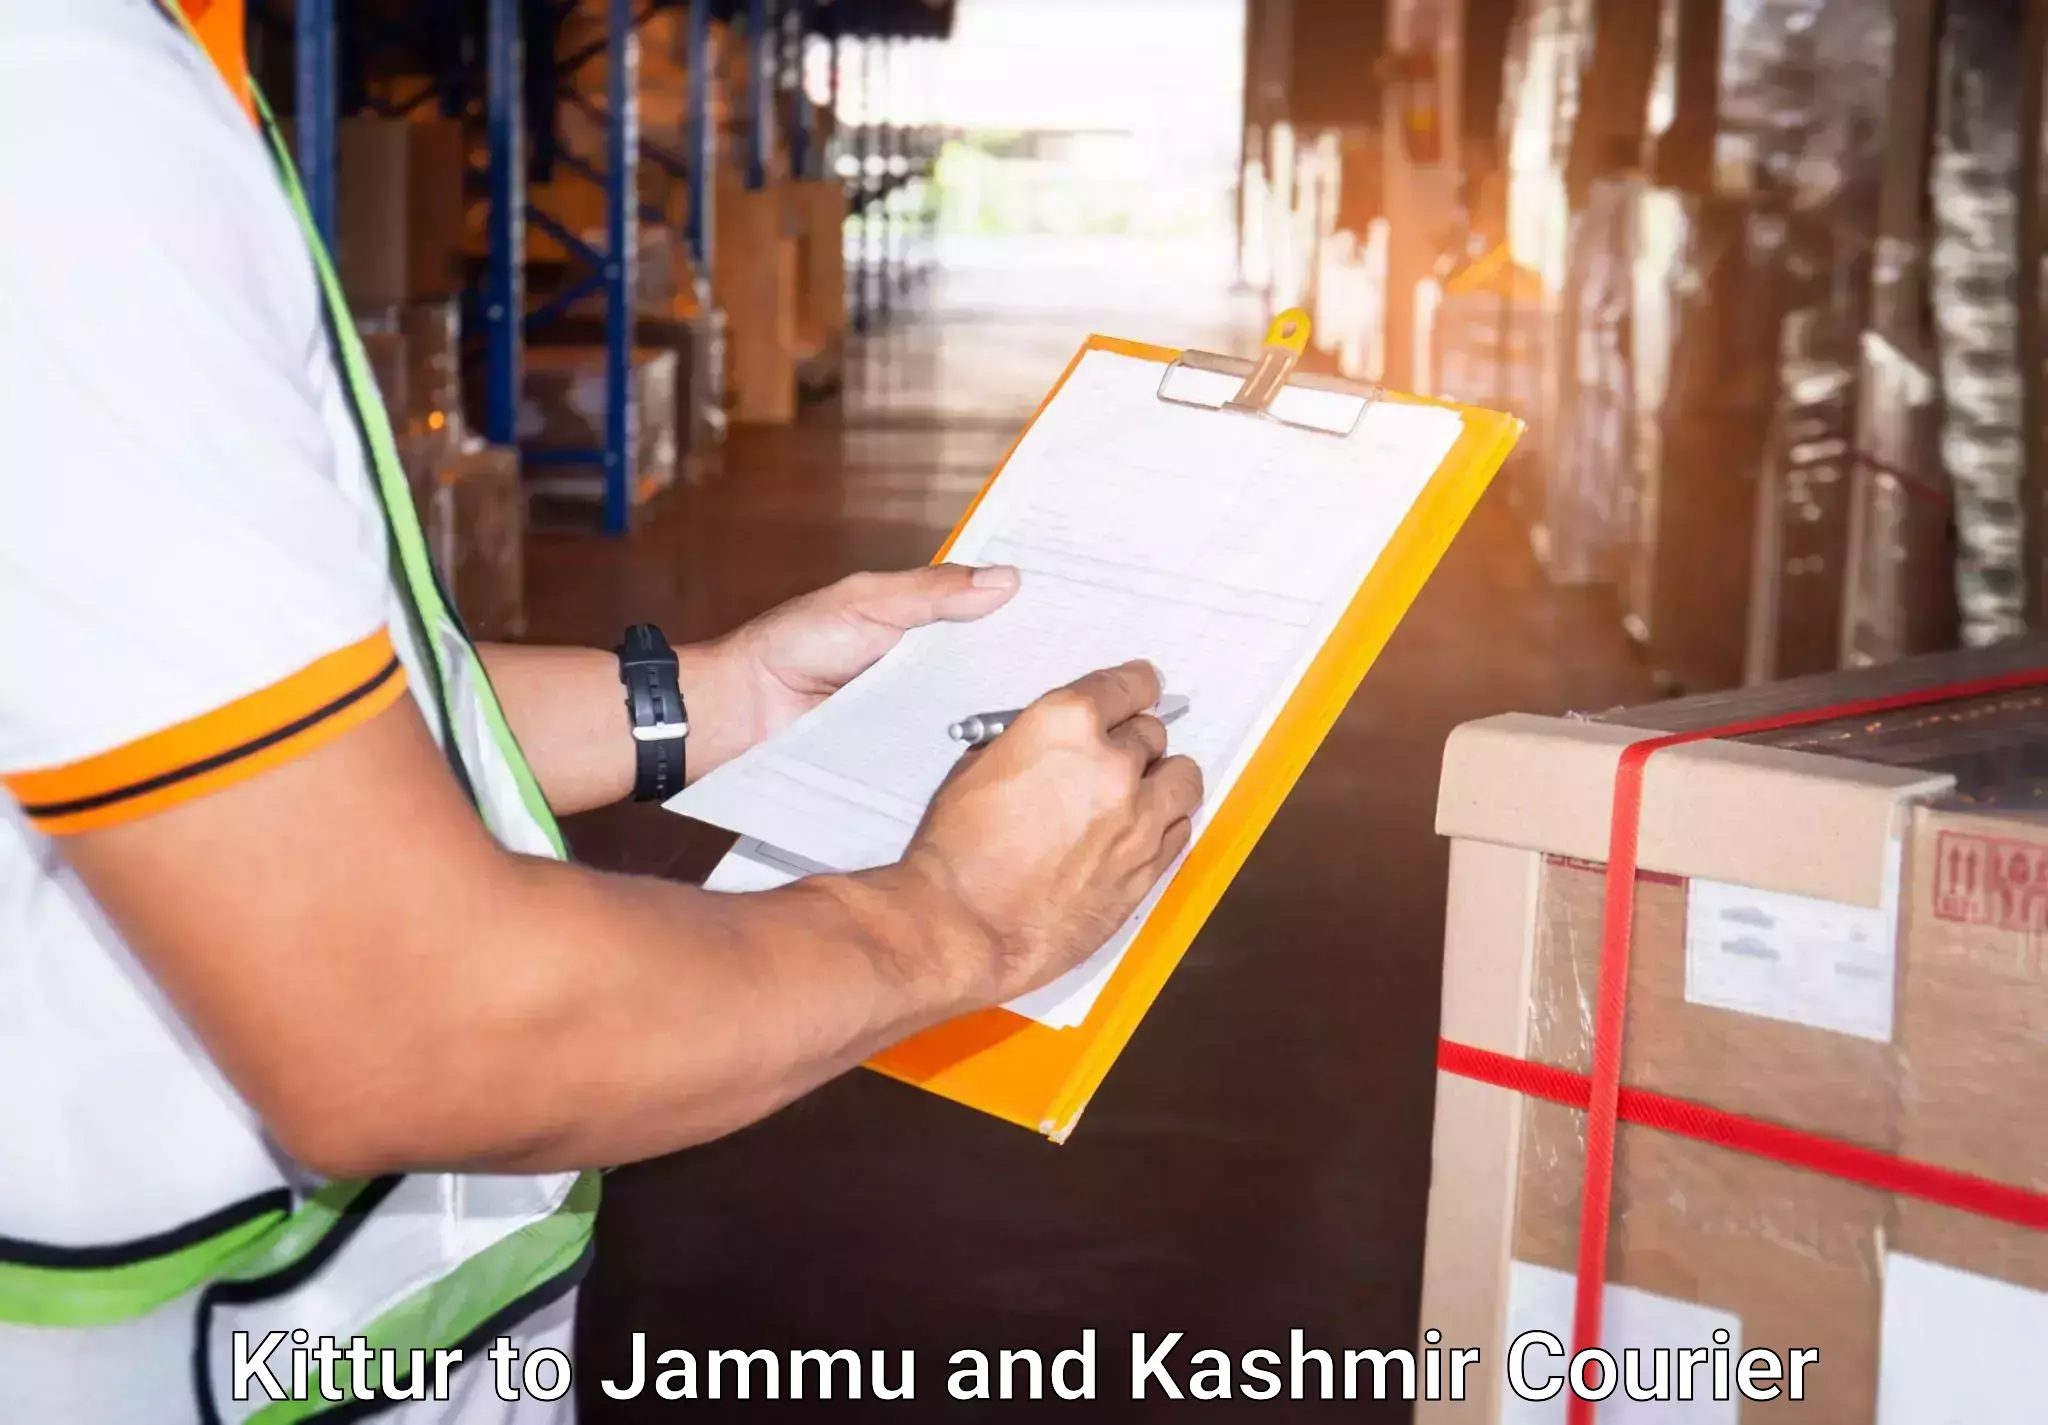 Luggage courier network Kittur to Srinagar Kashmir